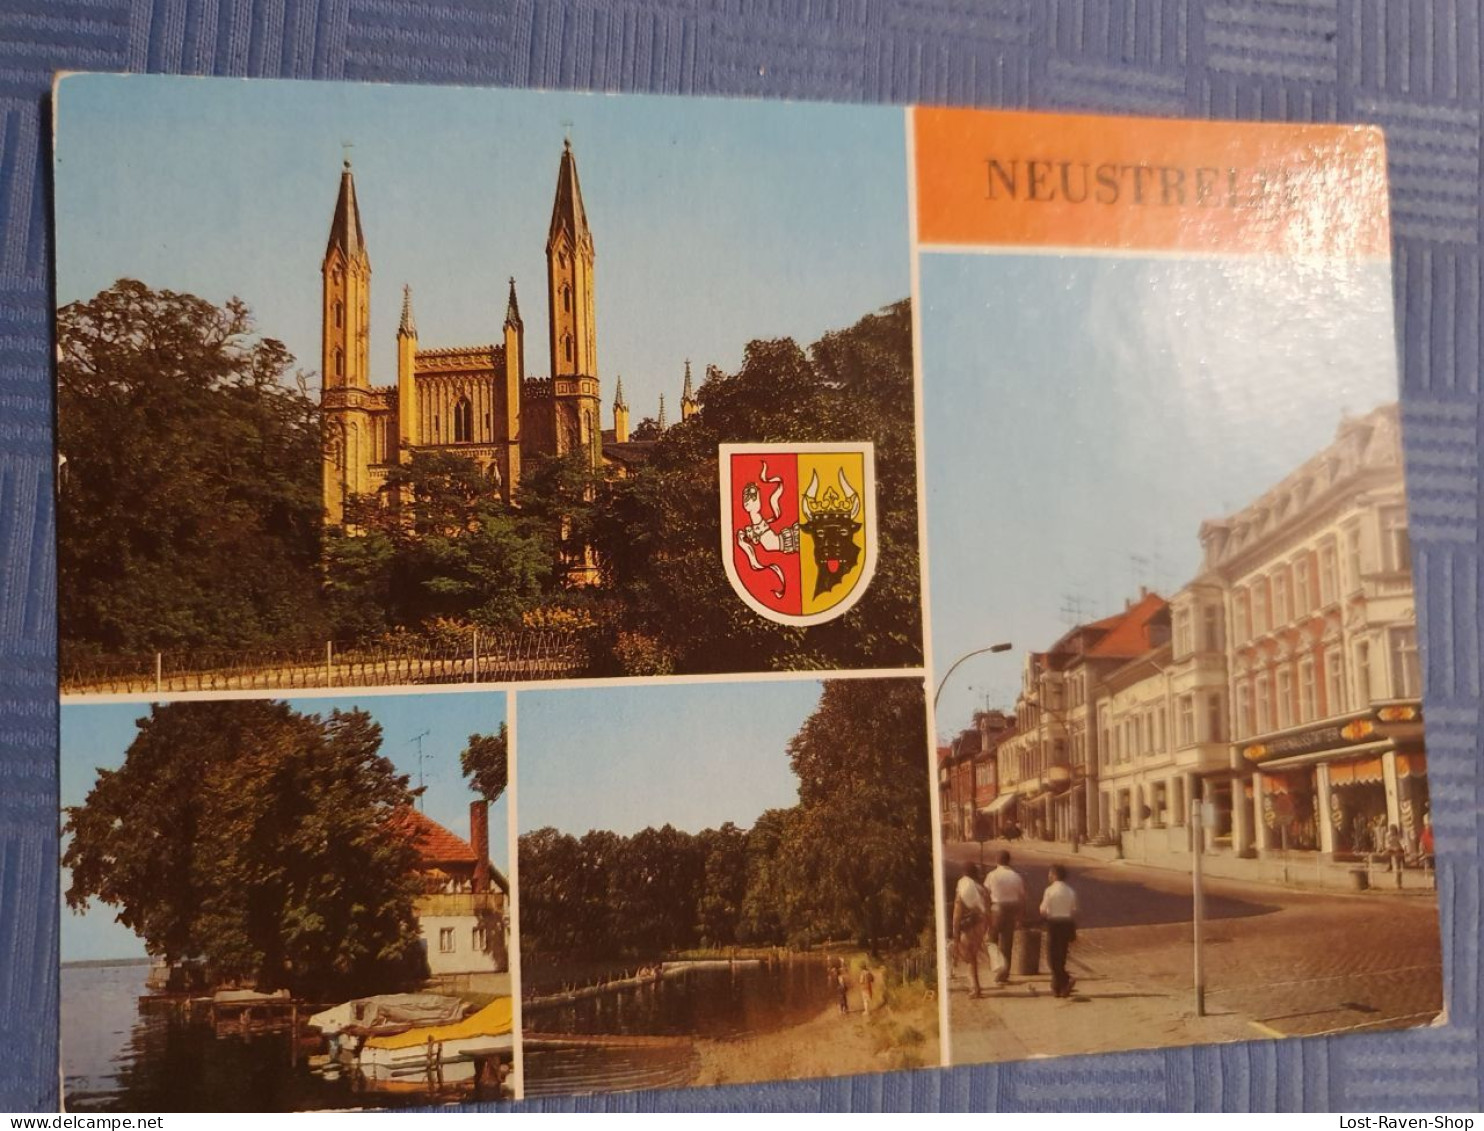 Neustrelitz - Neustrelitz